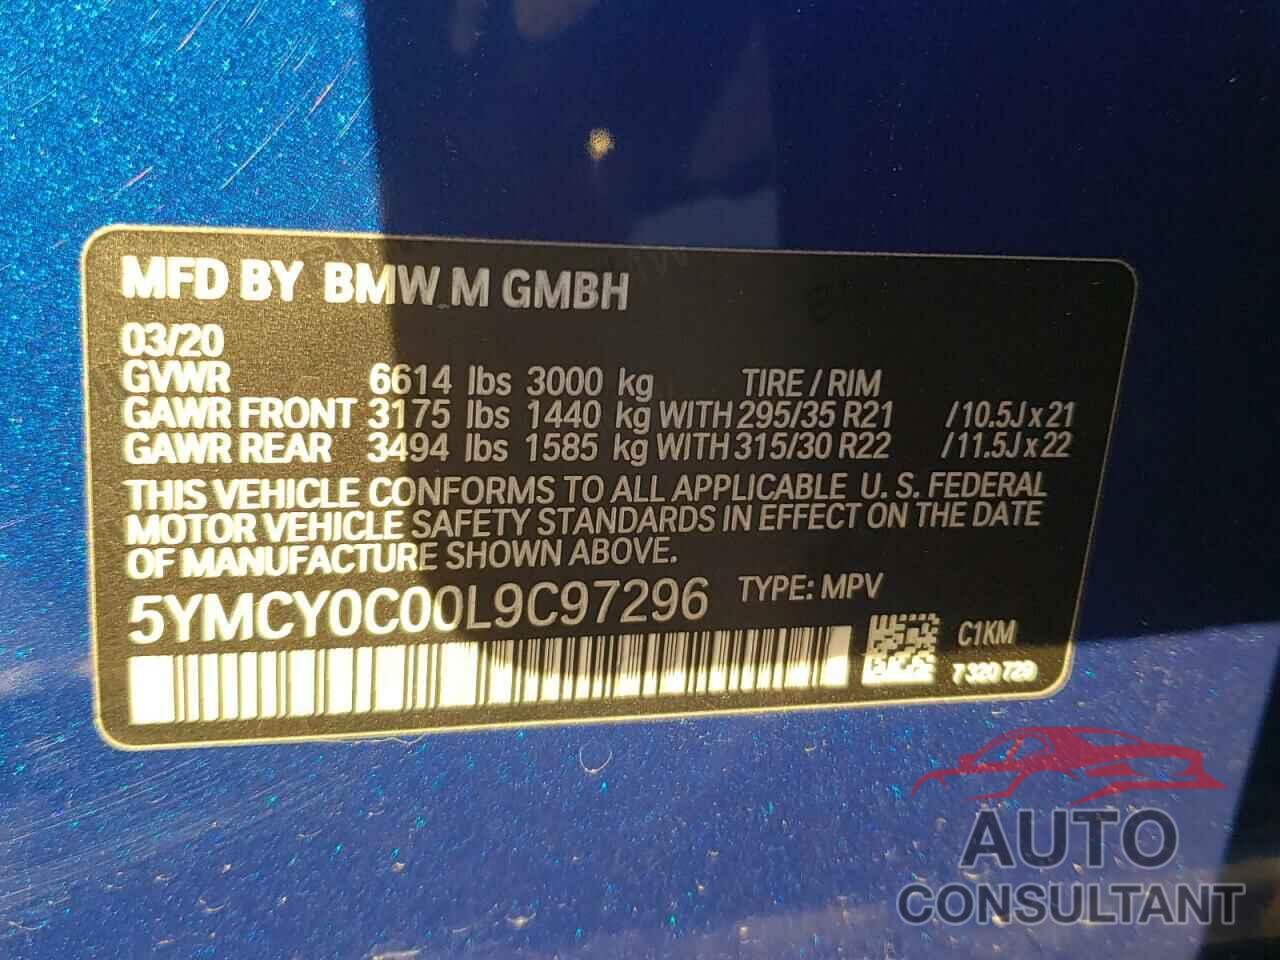 BMW X6 2020 - 5YMCY0C00L9C97296